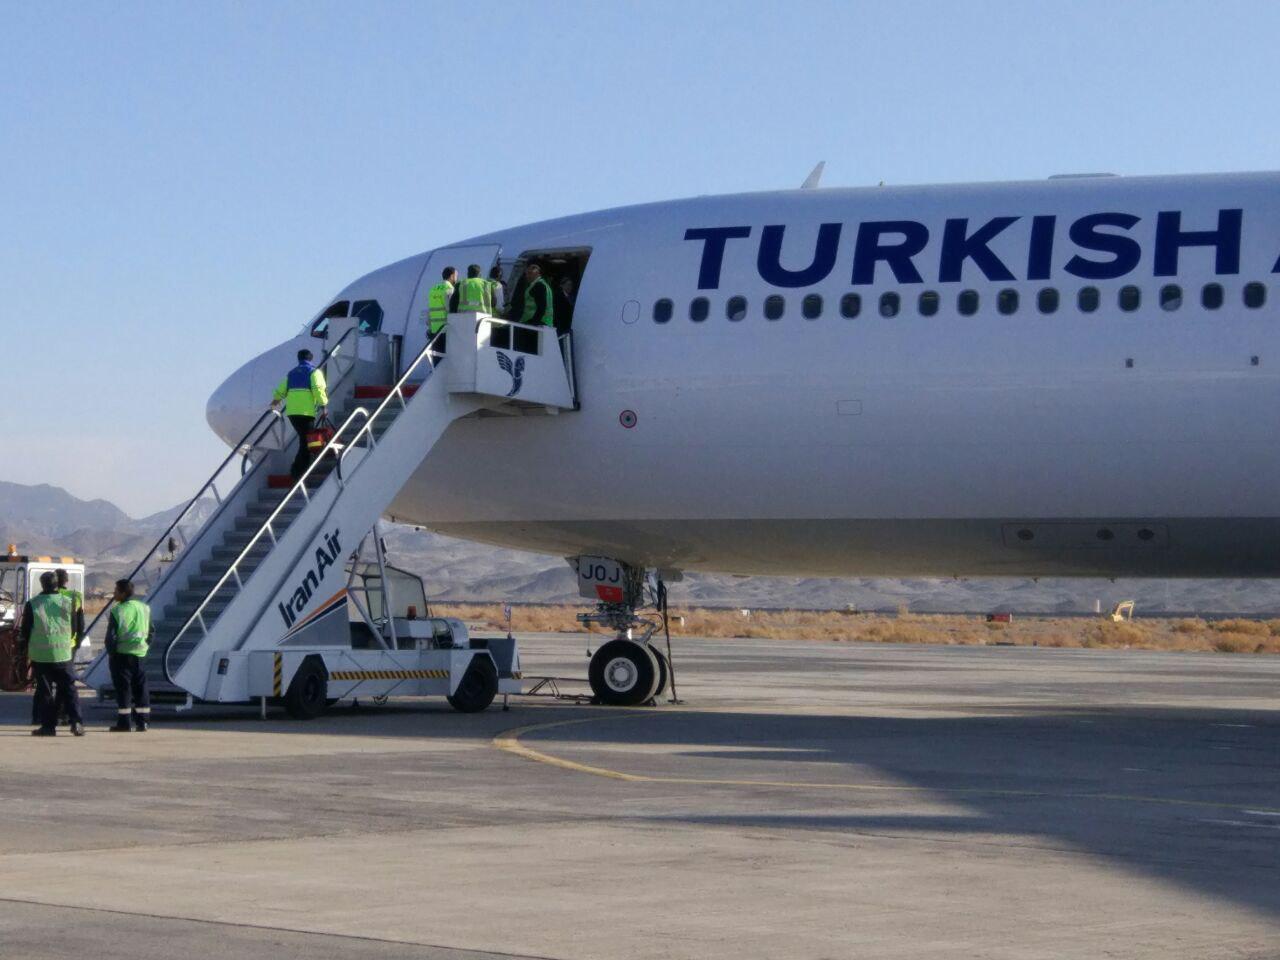 فرود اضطراری هواپیمای ترکیش ایرلاینز در زاهدان